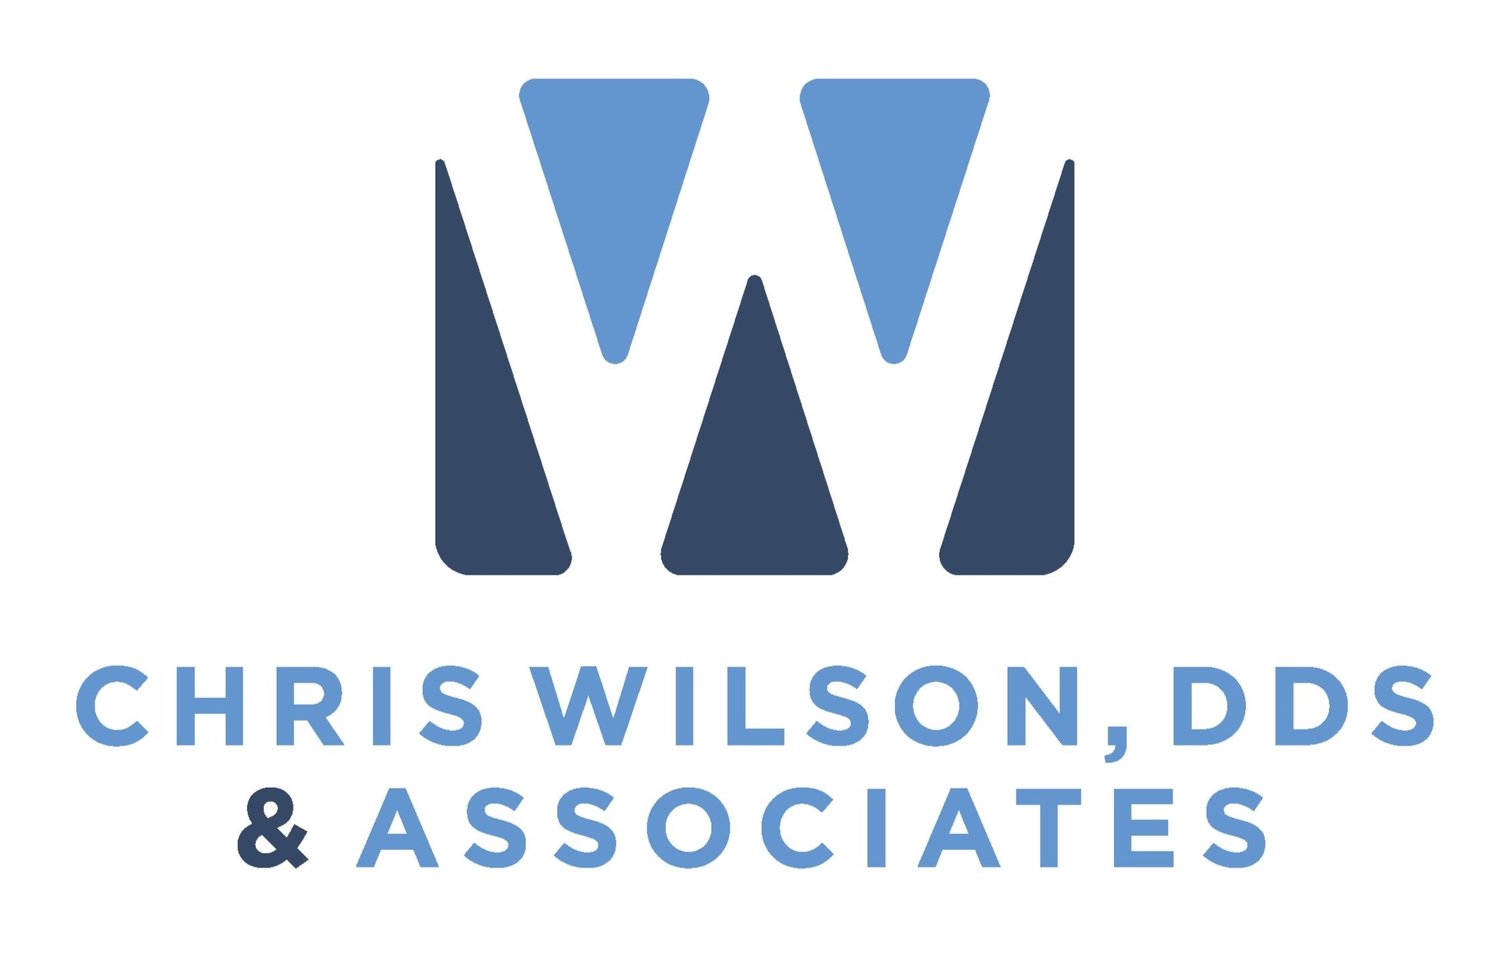 Chris Wilson, DDS & Associates